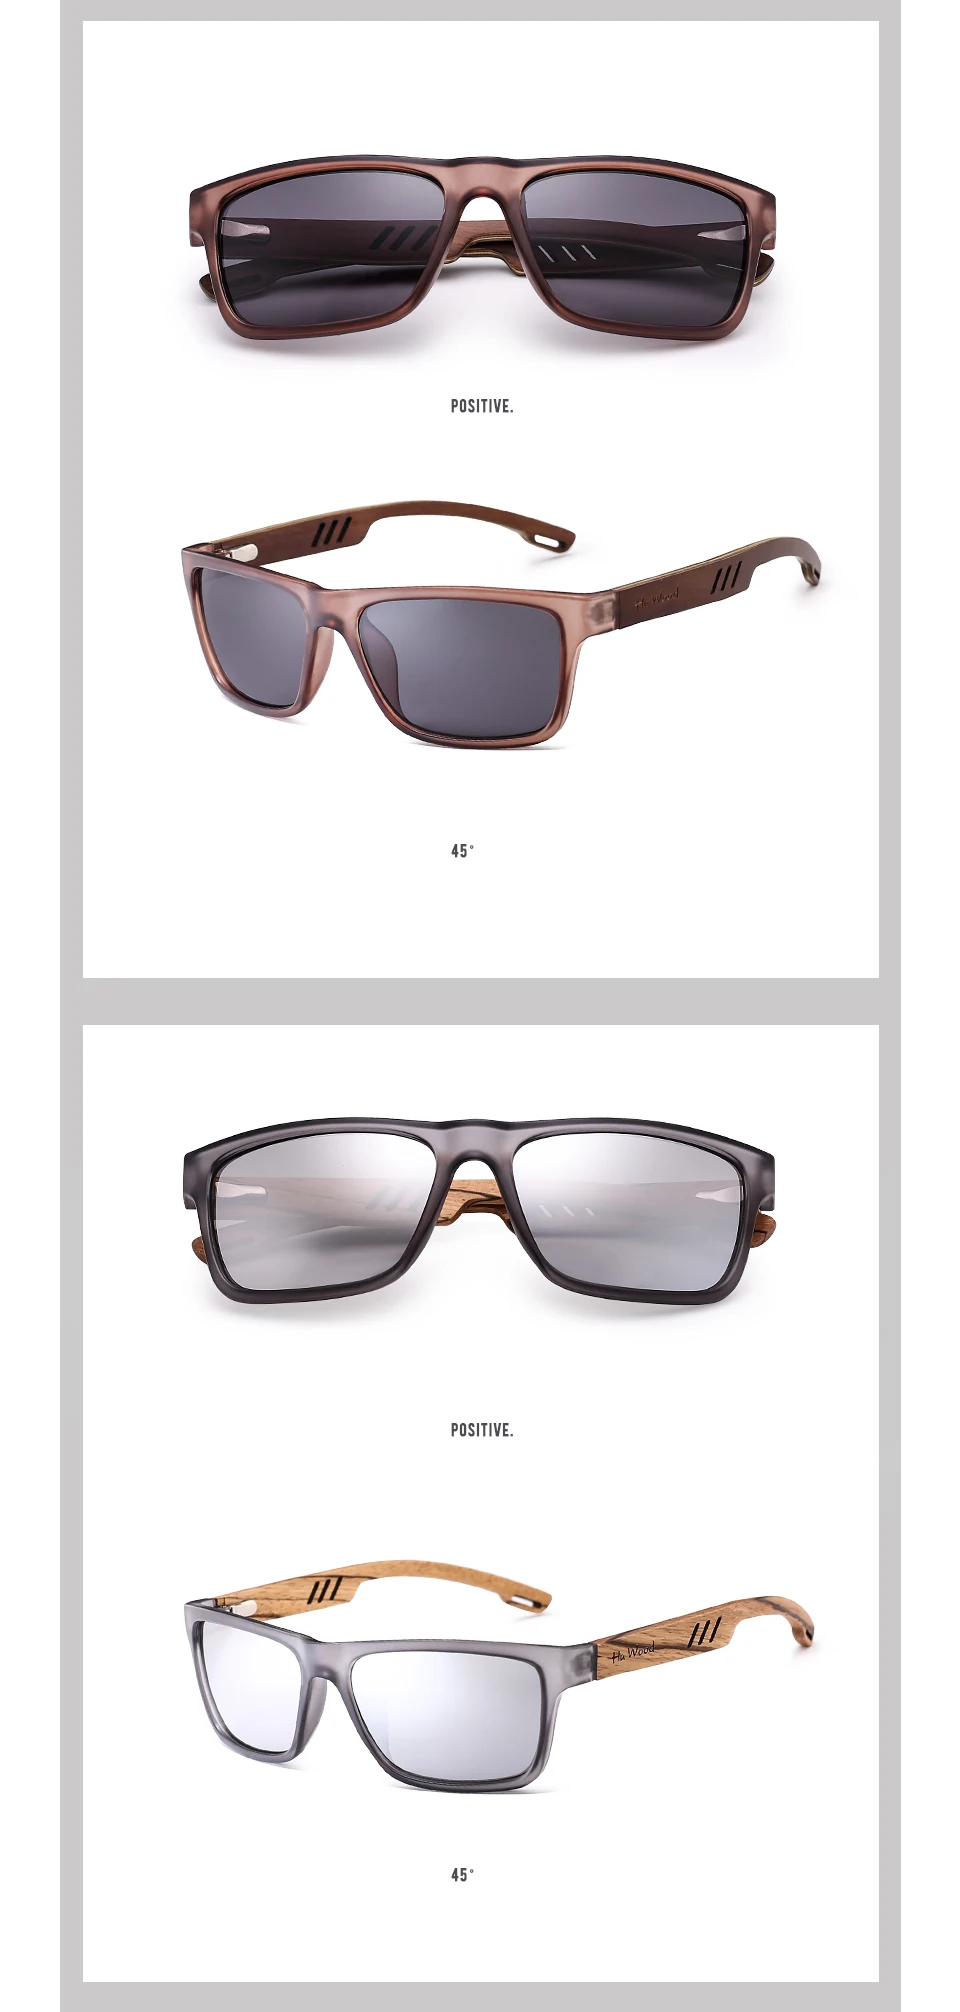 HU деревянные брендовые дизайнерские солнечные очки из дерева зебрано для мужчин модные спортивные цветные градиентные солнцезащитные очки для вождения рыбалки зеркальные линзы GRS8016